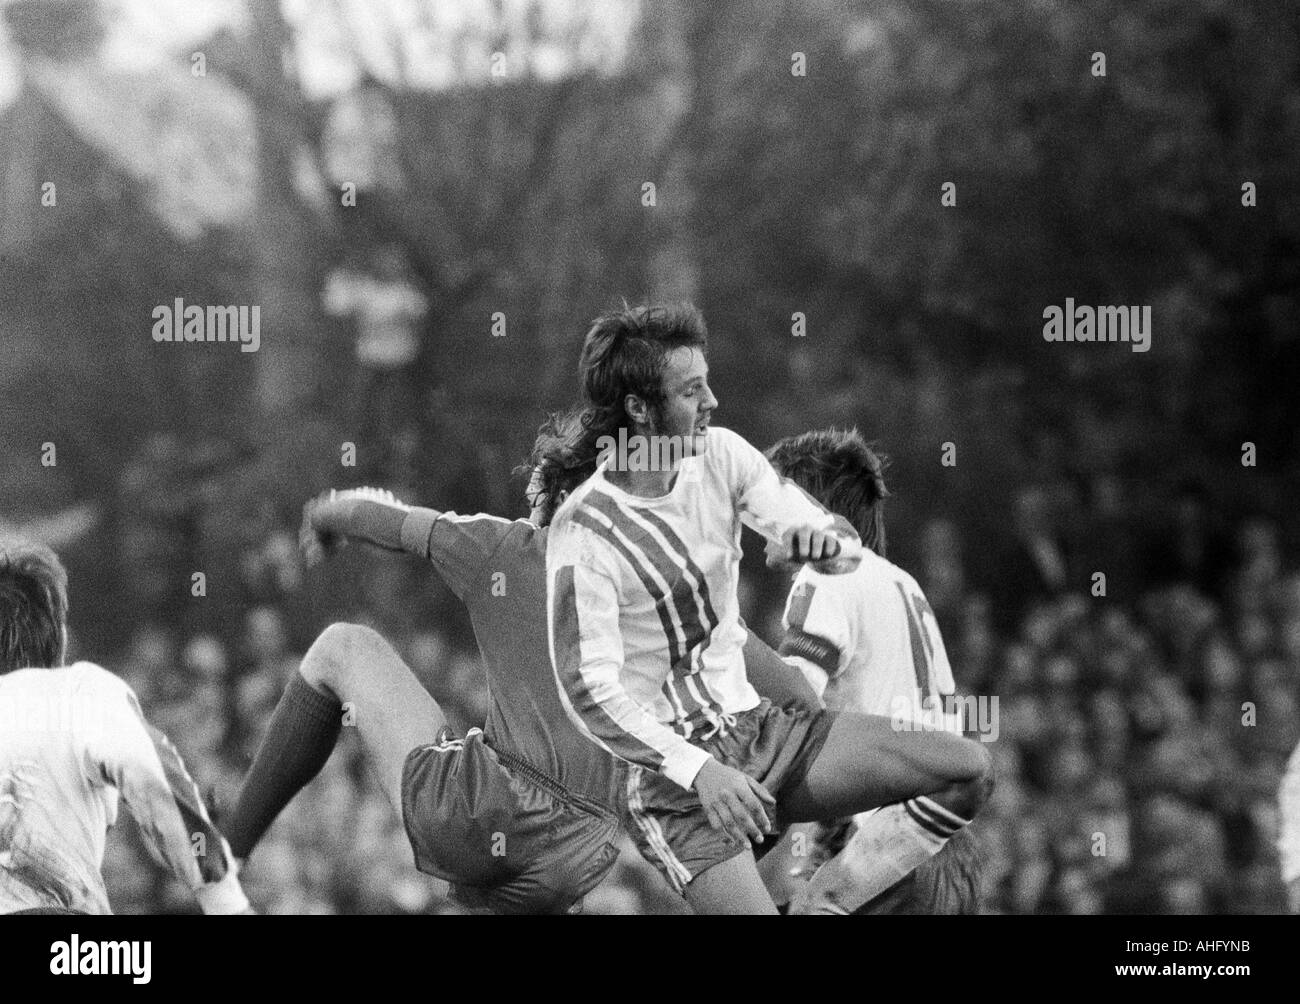 Fußball, Bundesliga, 1973/1974, VfL Bochum gegen FC Bayern München 0:1, Stadion an der Castroper Straße in Bochum, Szene des Spiels, Heinz-Werner Eggeling (Bochum) kämpfen um den Ball Stockfoto